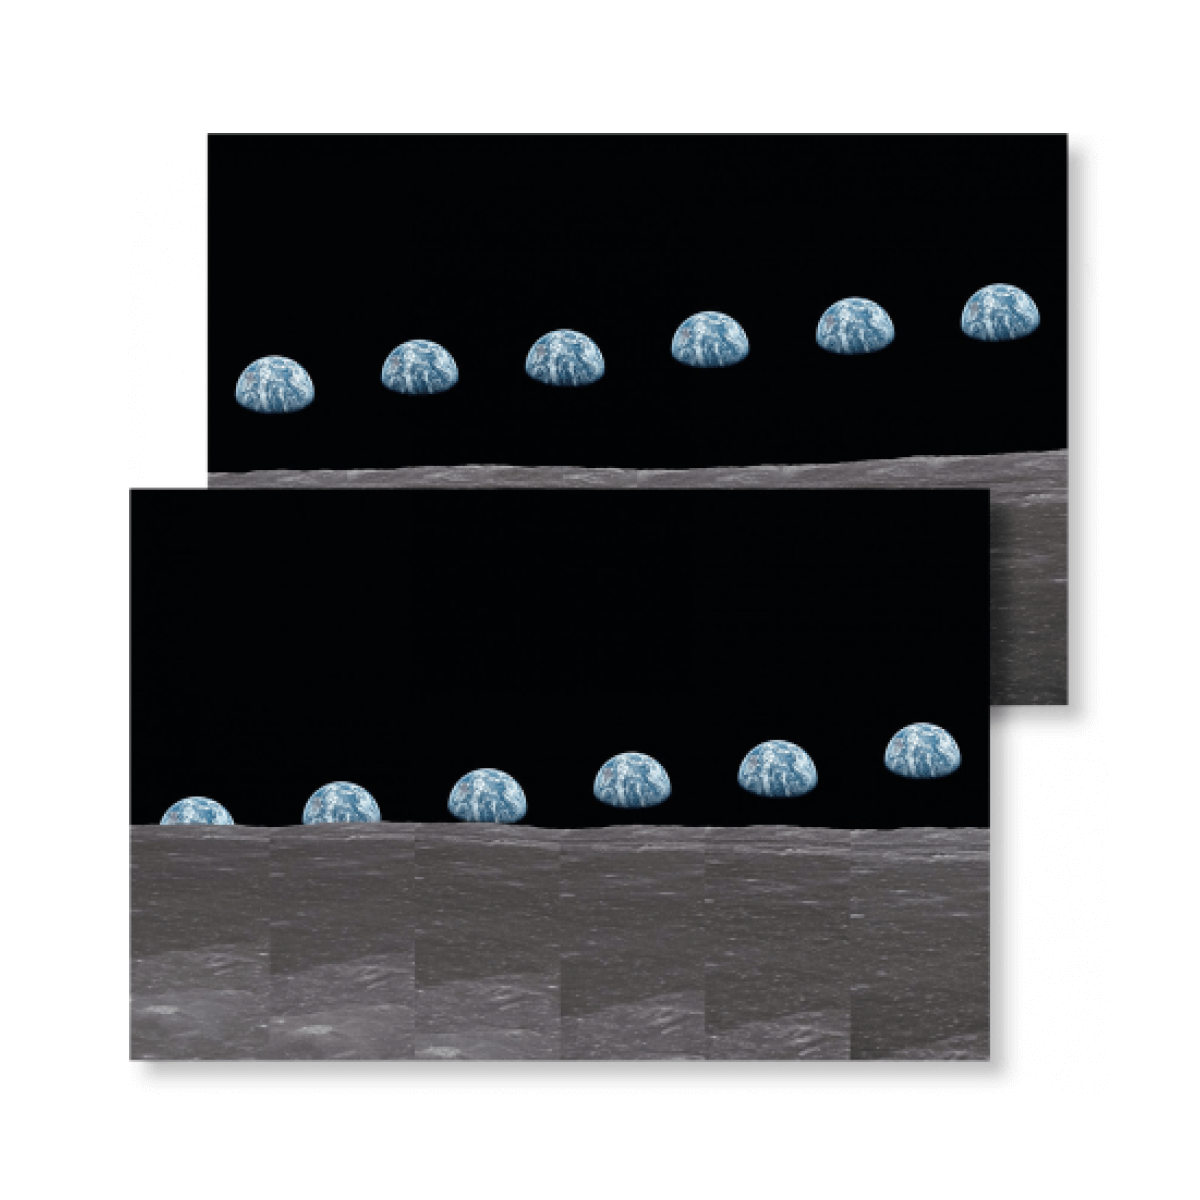 Taschen Buzz Aldrin. Apollo 11. ‘Earthrise Sequence’ Signed Edition